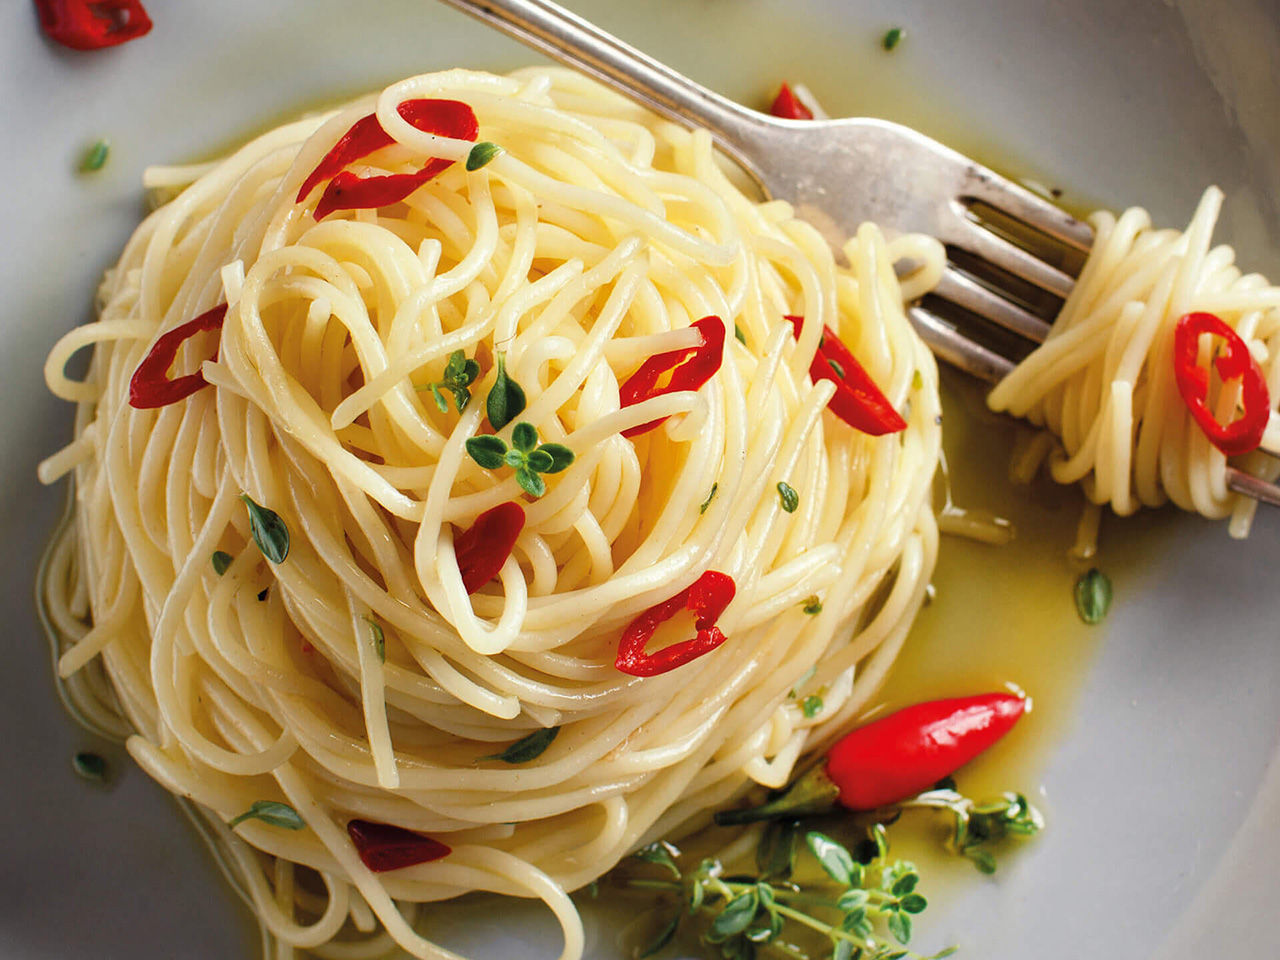 Spaghetti aglio, olio e peperoncino.